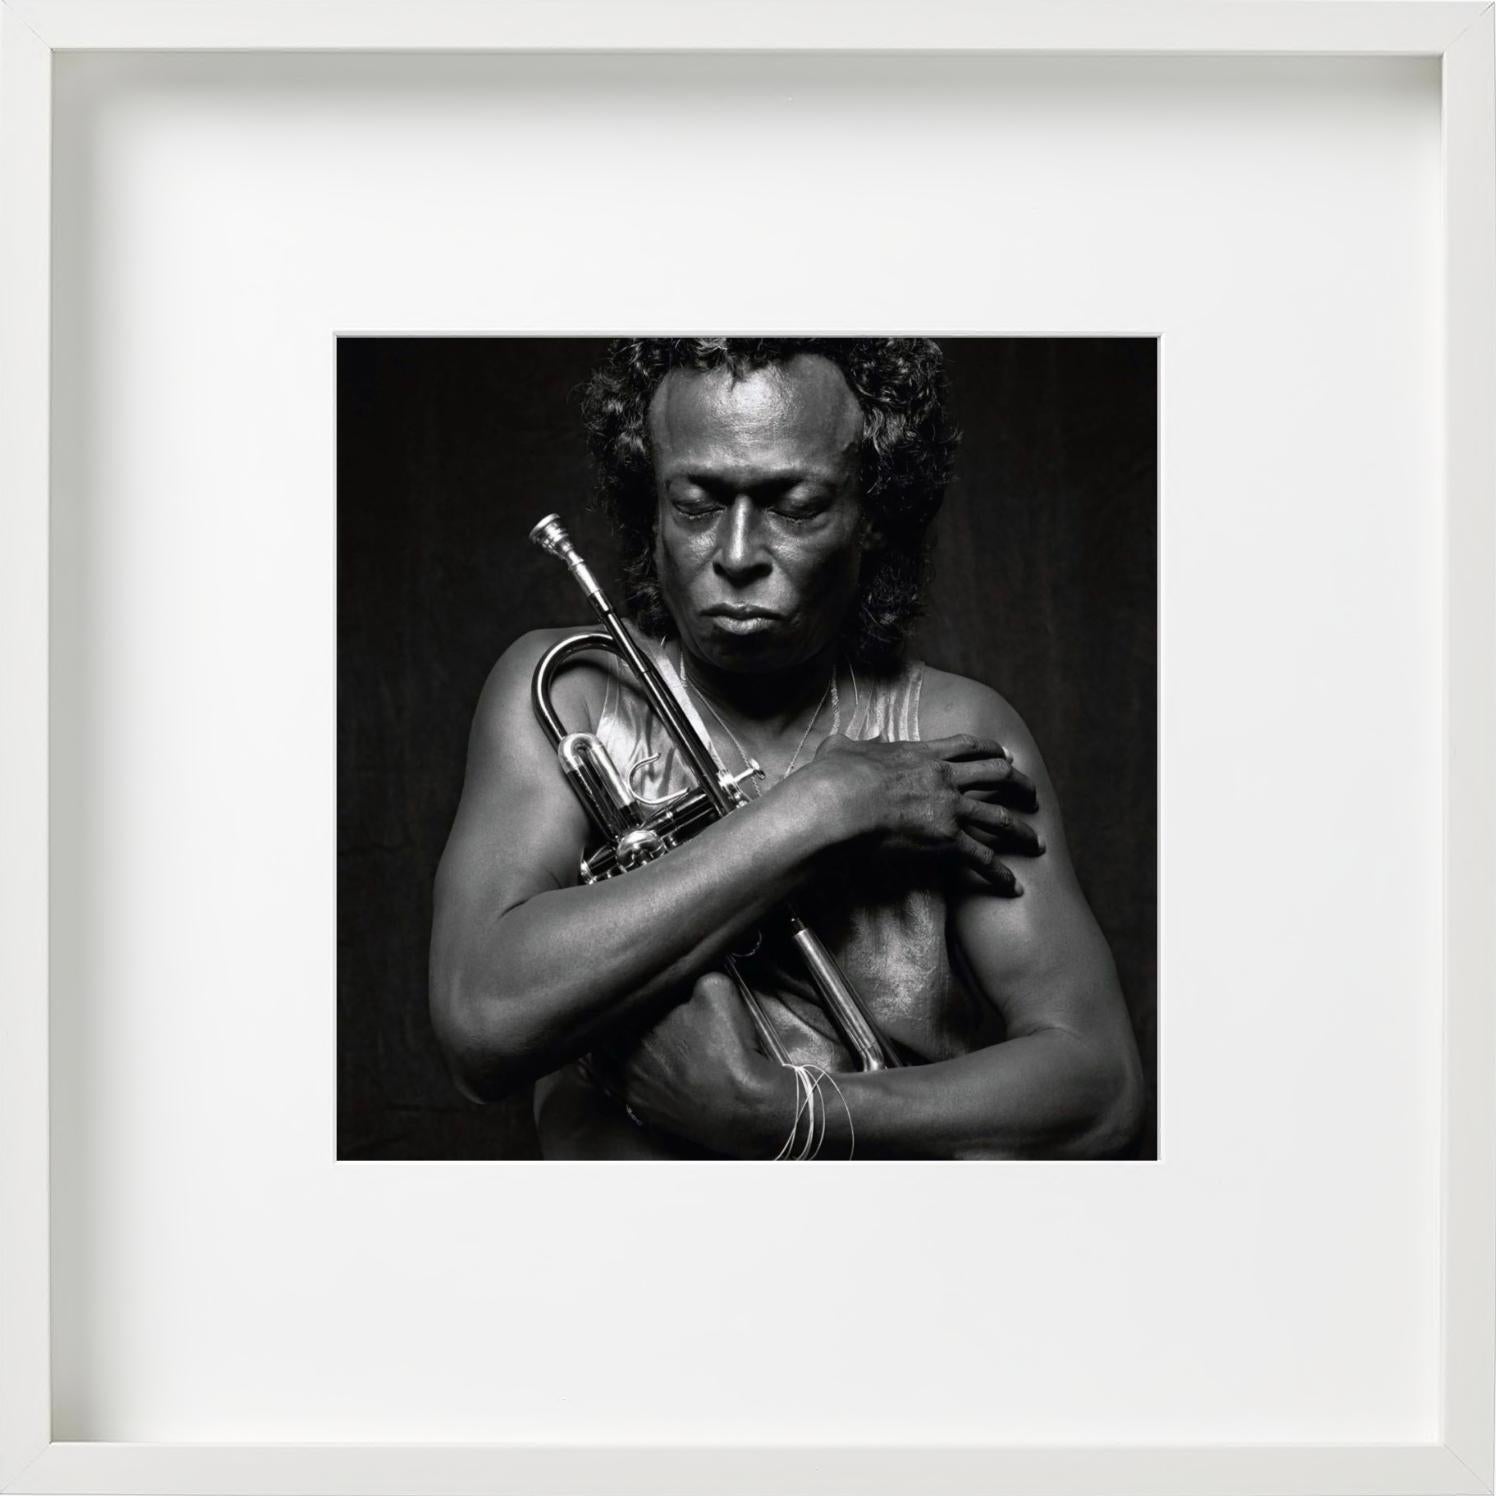 Miles Davis II. Per Lui - Portrait with Trumpet, fine art Photography, 1989 - Gray Portrait Photograph by Michel Comte